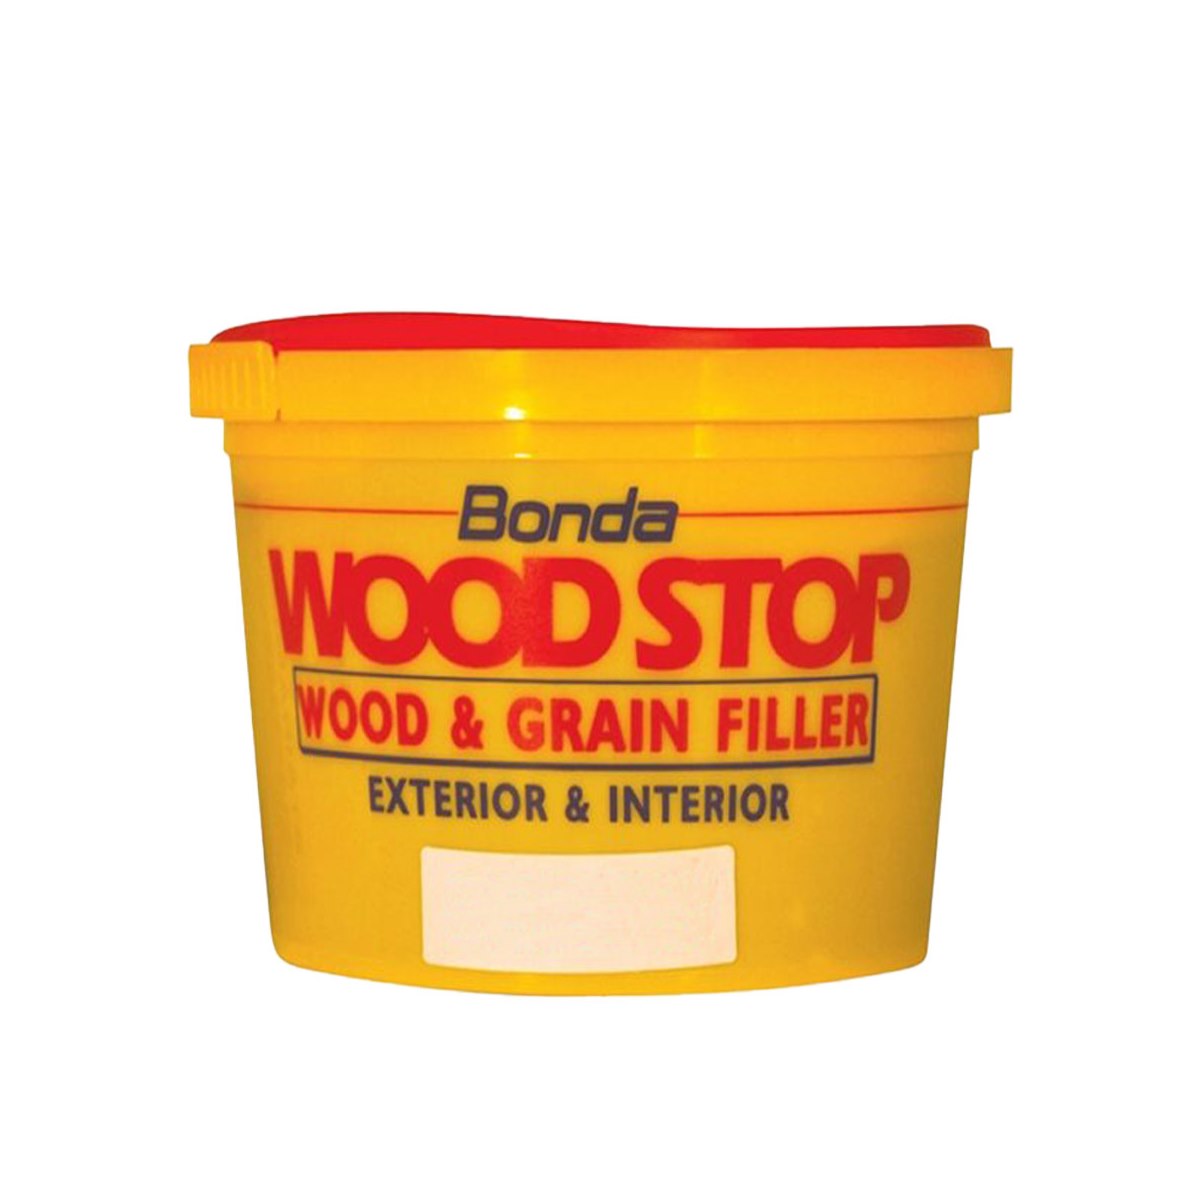 Bonda Wood Stop Wood and Grain Filler